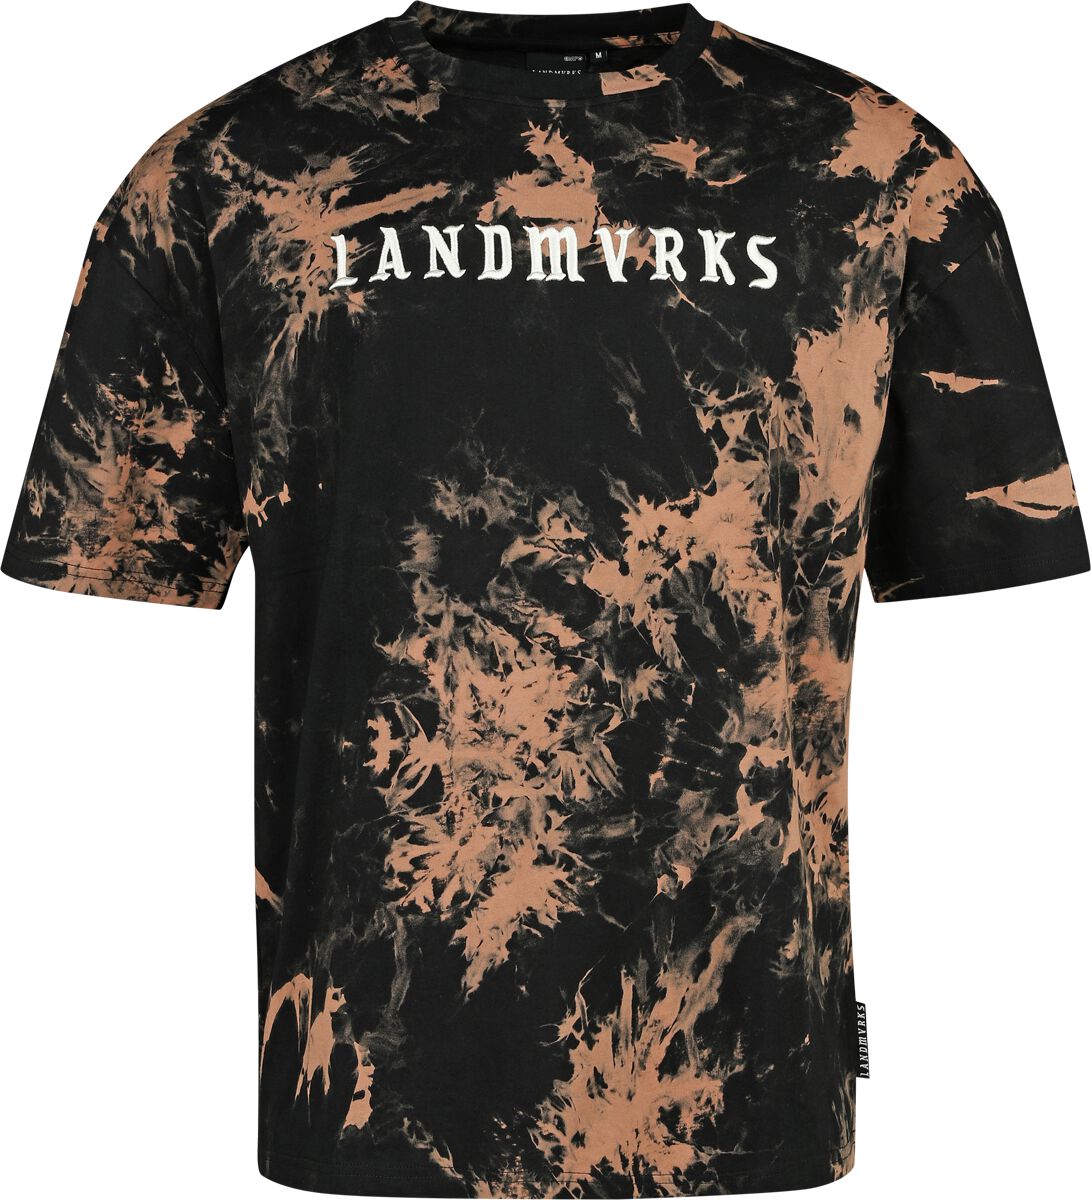 Landmvrks EMP Signature Collection T-Shirt schwarz braun in XXL